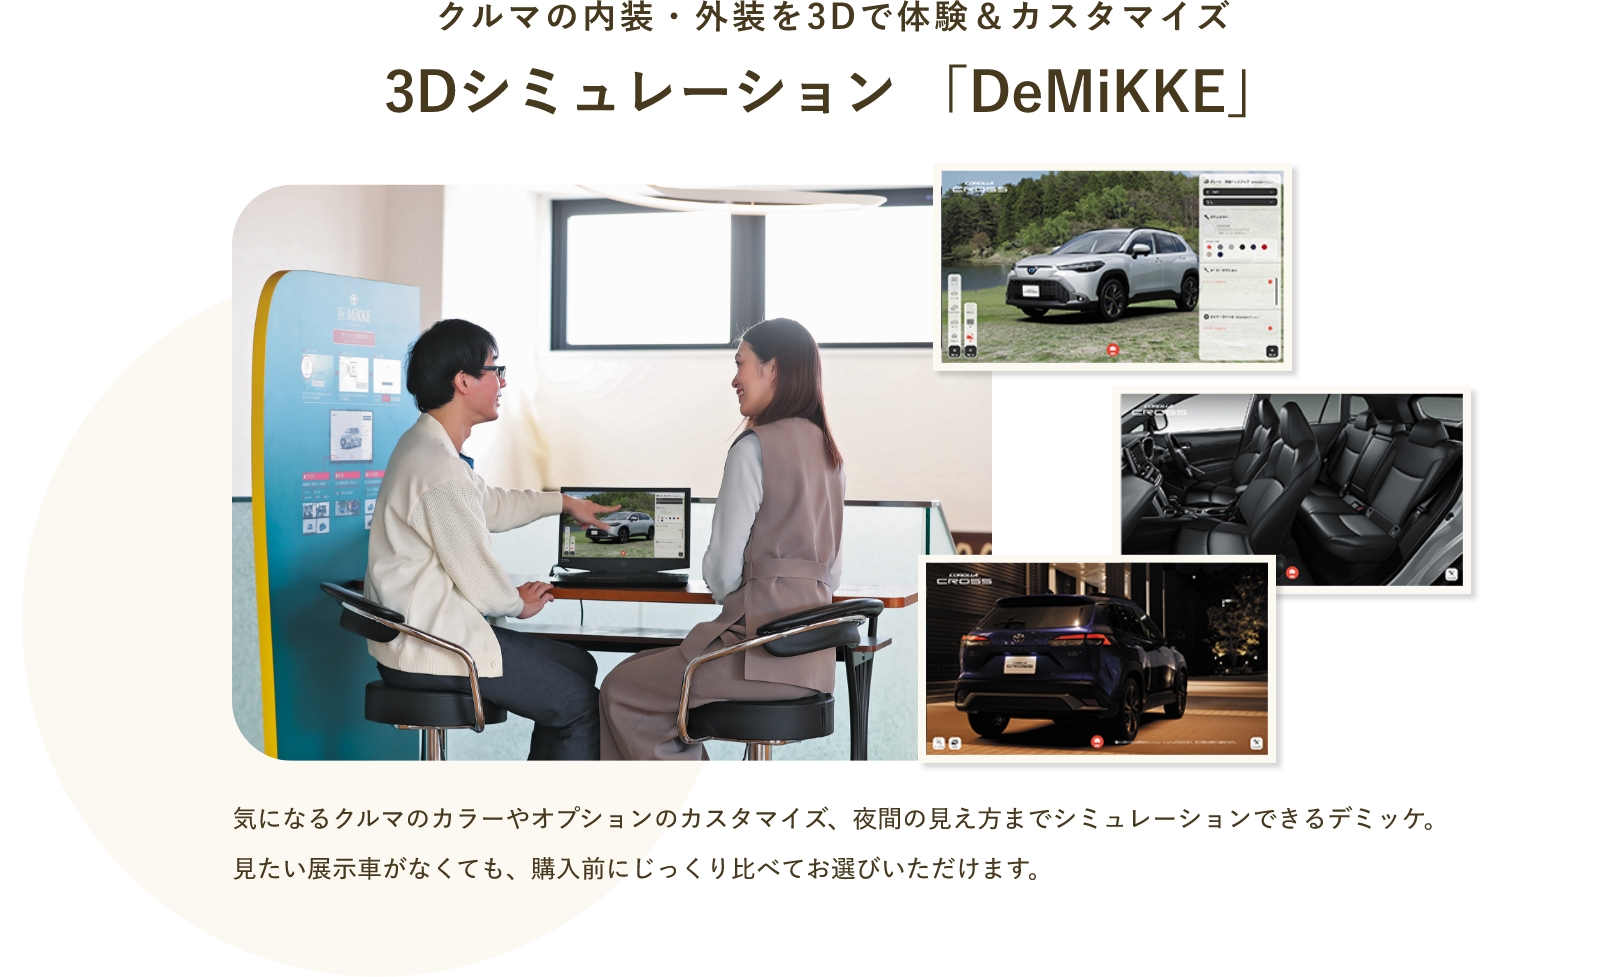 クルマの内装・外装を3Dで体験&カスタマイズ 3Dシミュレーション「DeMiKKE」